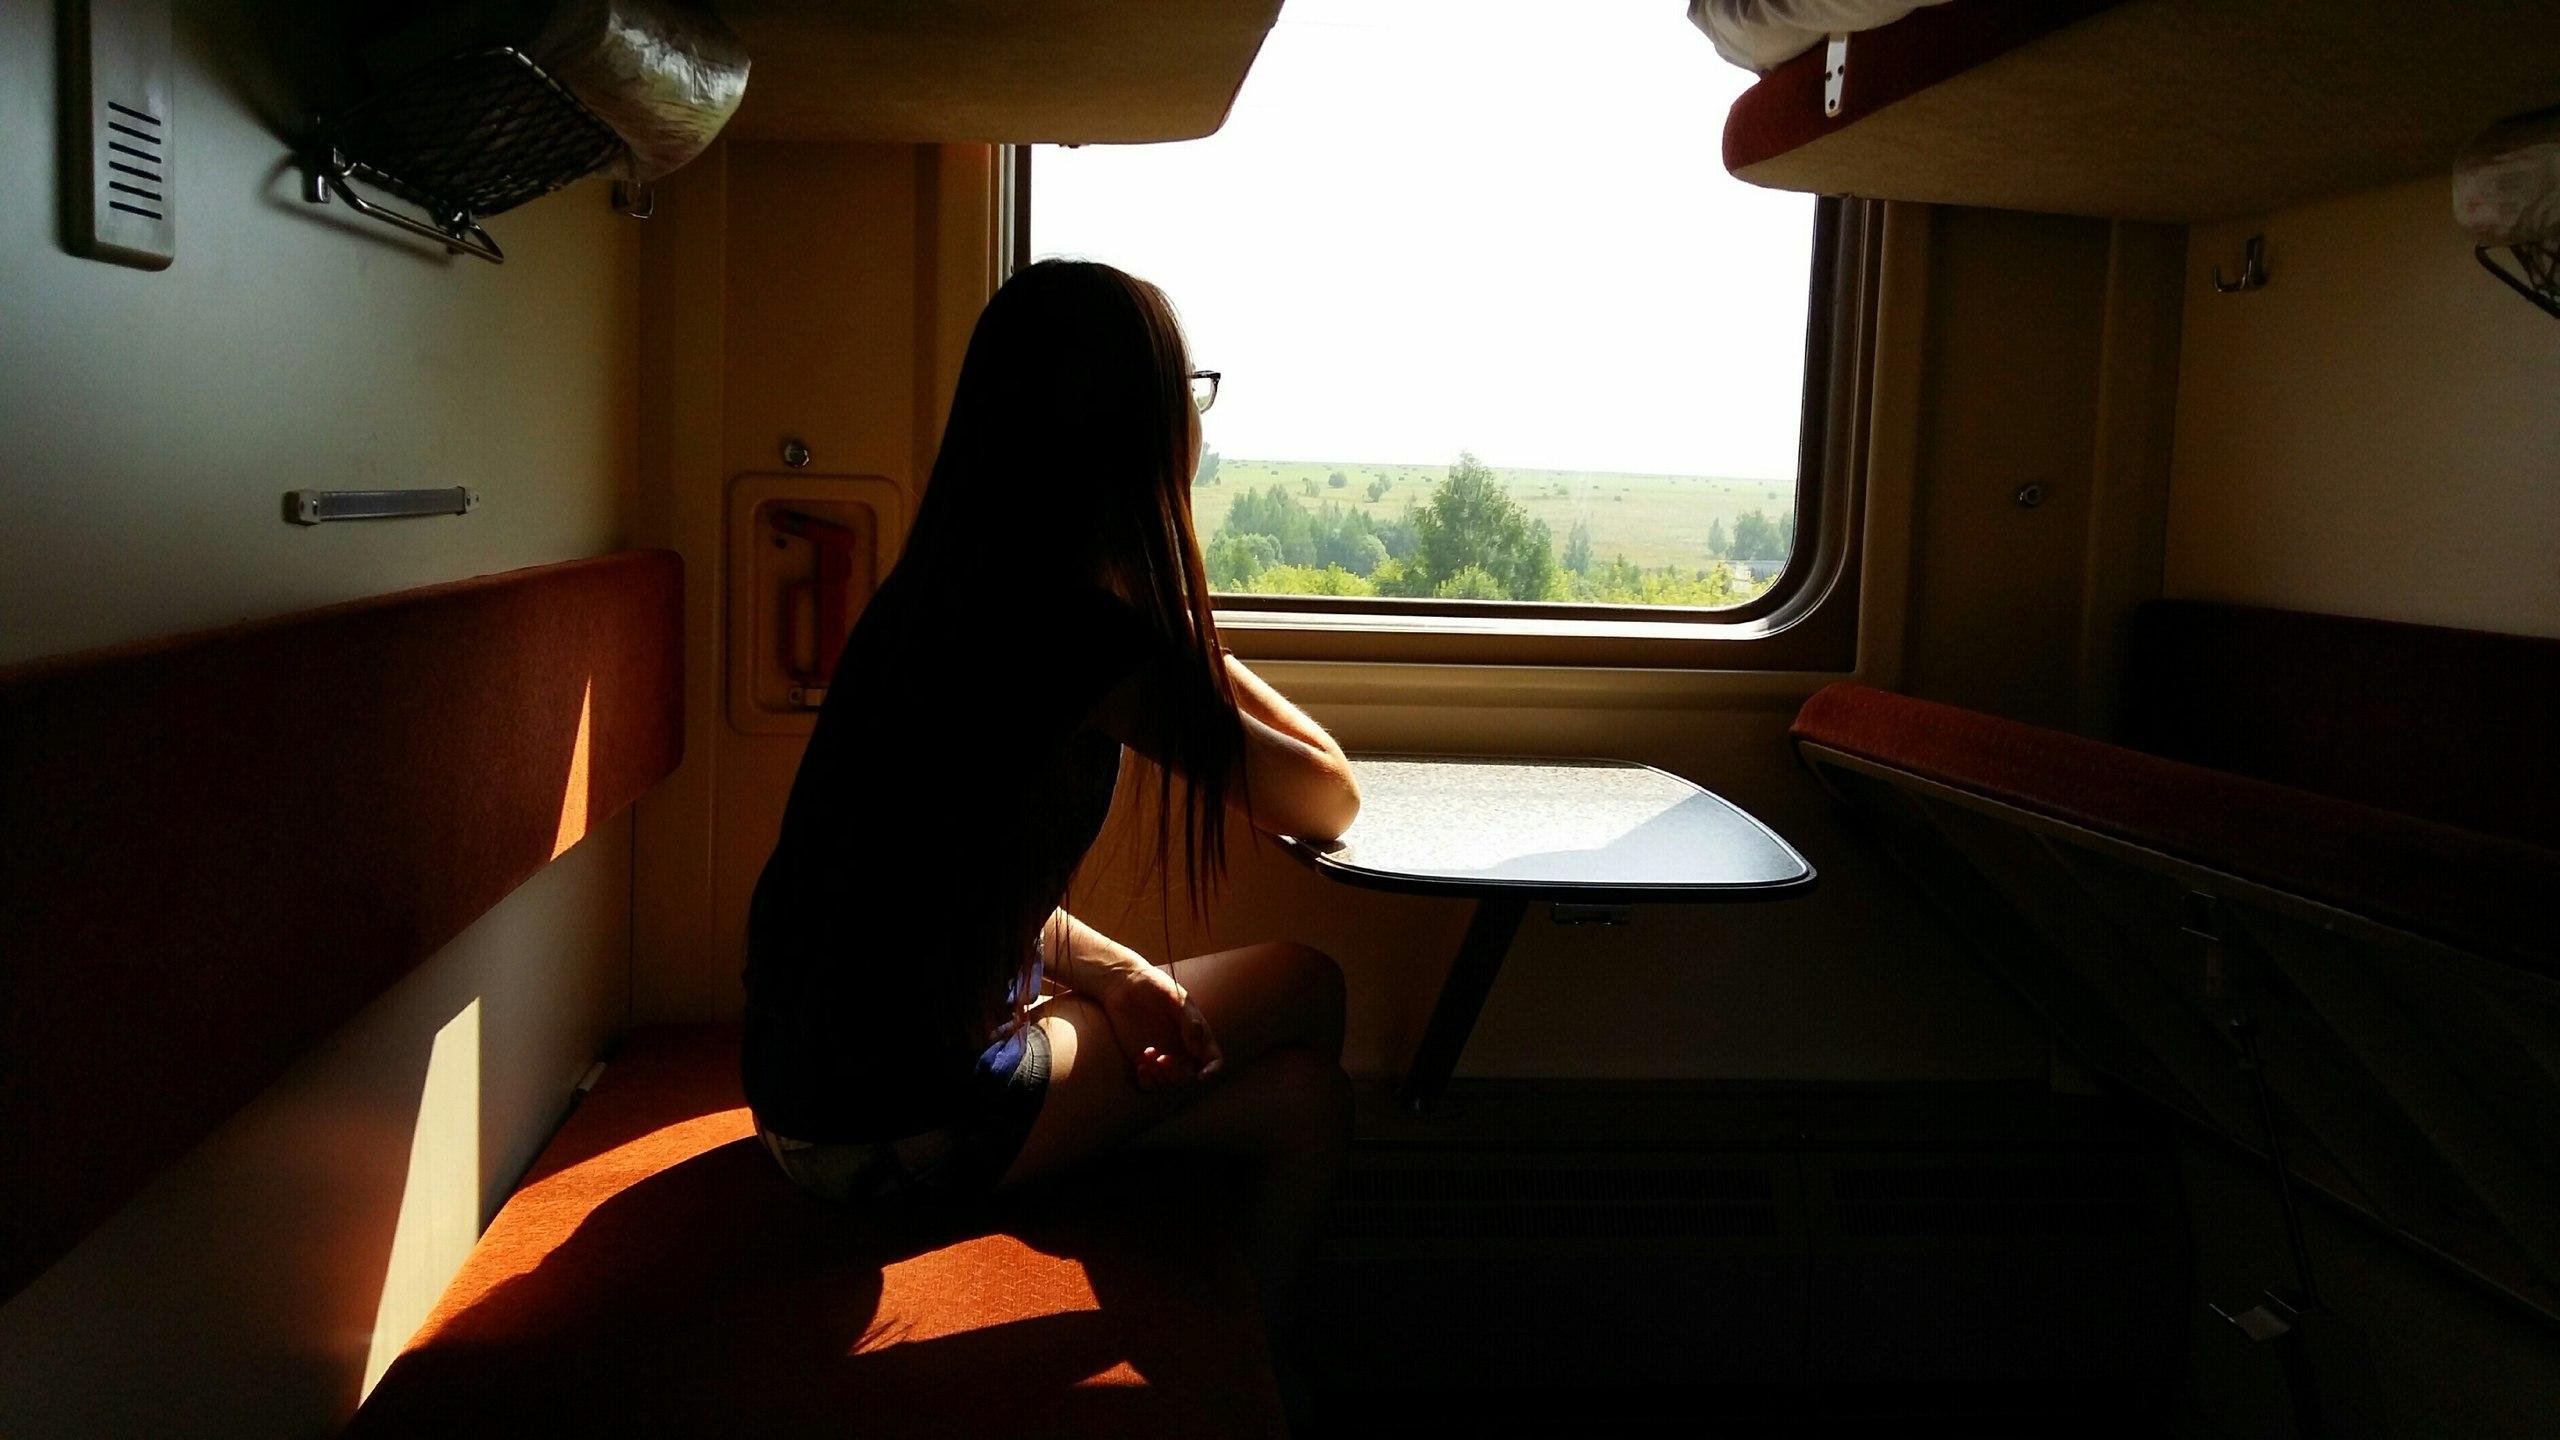 Фотографии в поезде девушек